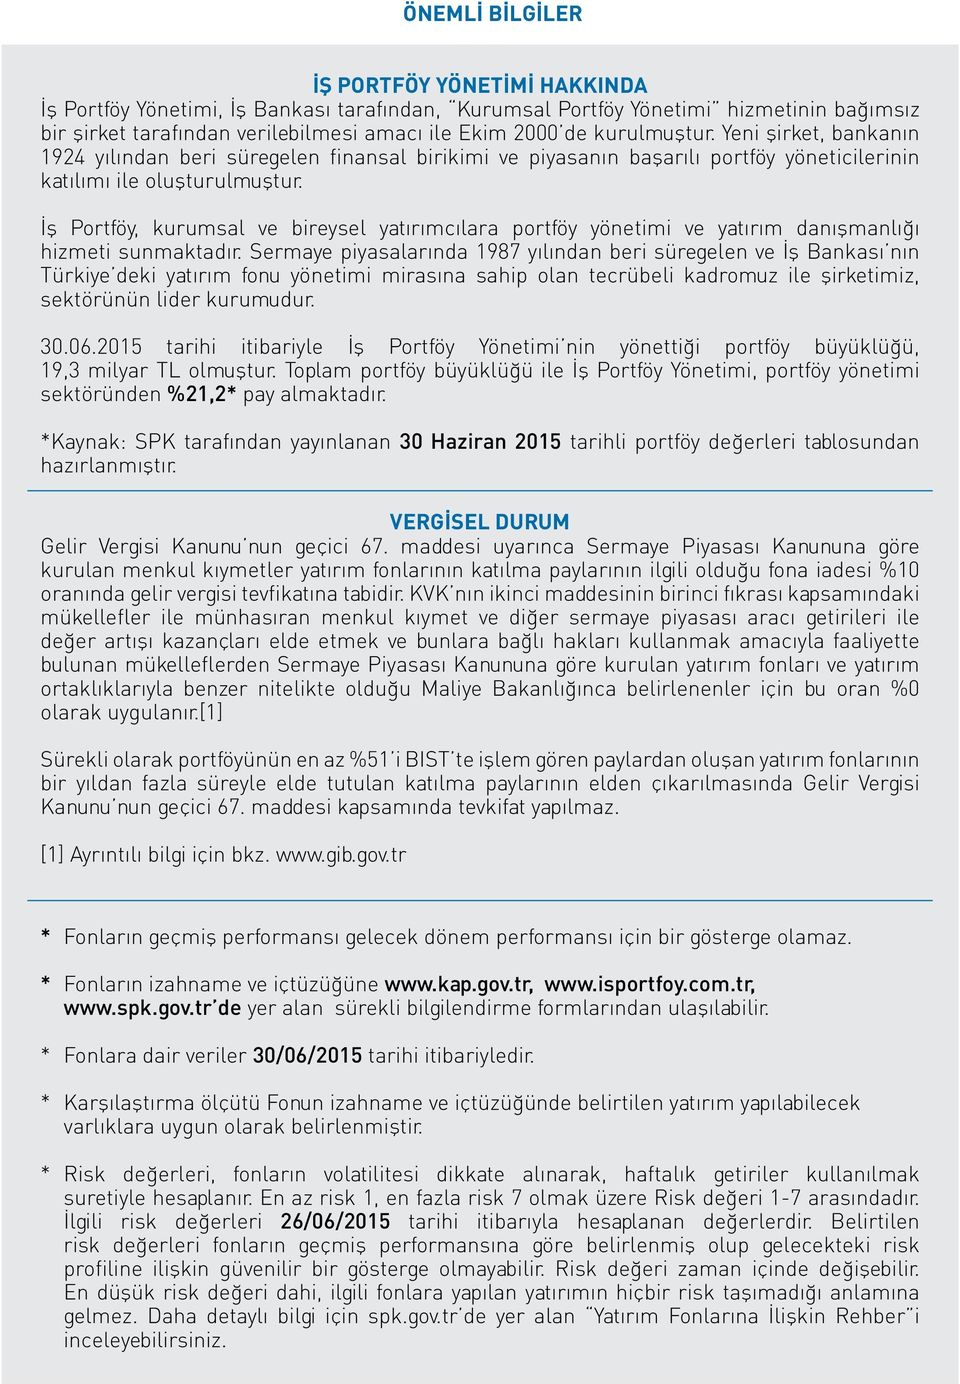 İş Portföy, kurumsal ve bireysel yatırımcılara portföy yönetimi ve yatırım danışmanlığı hizmeti sunmaktadır.